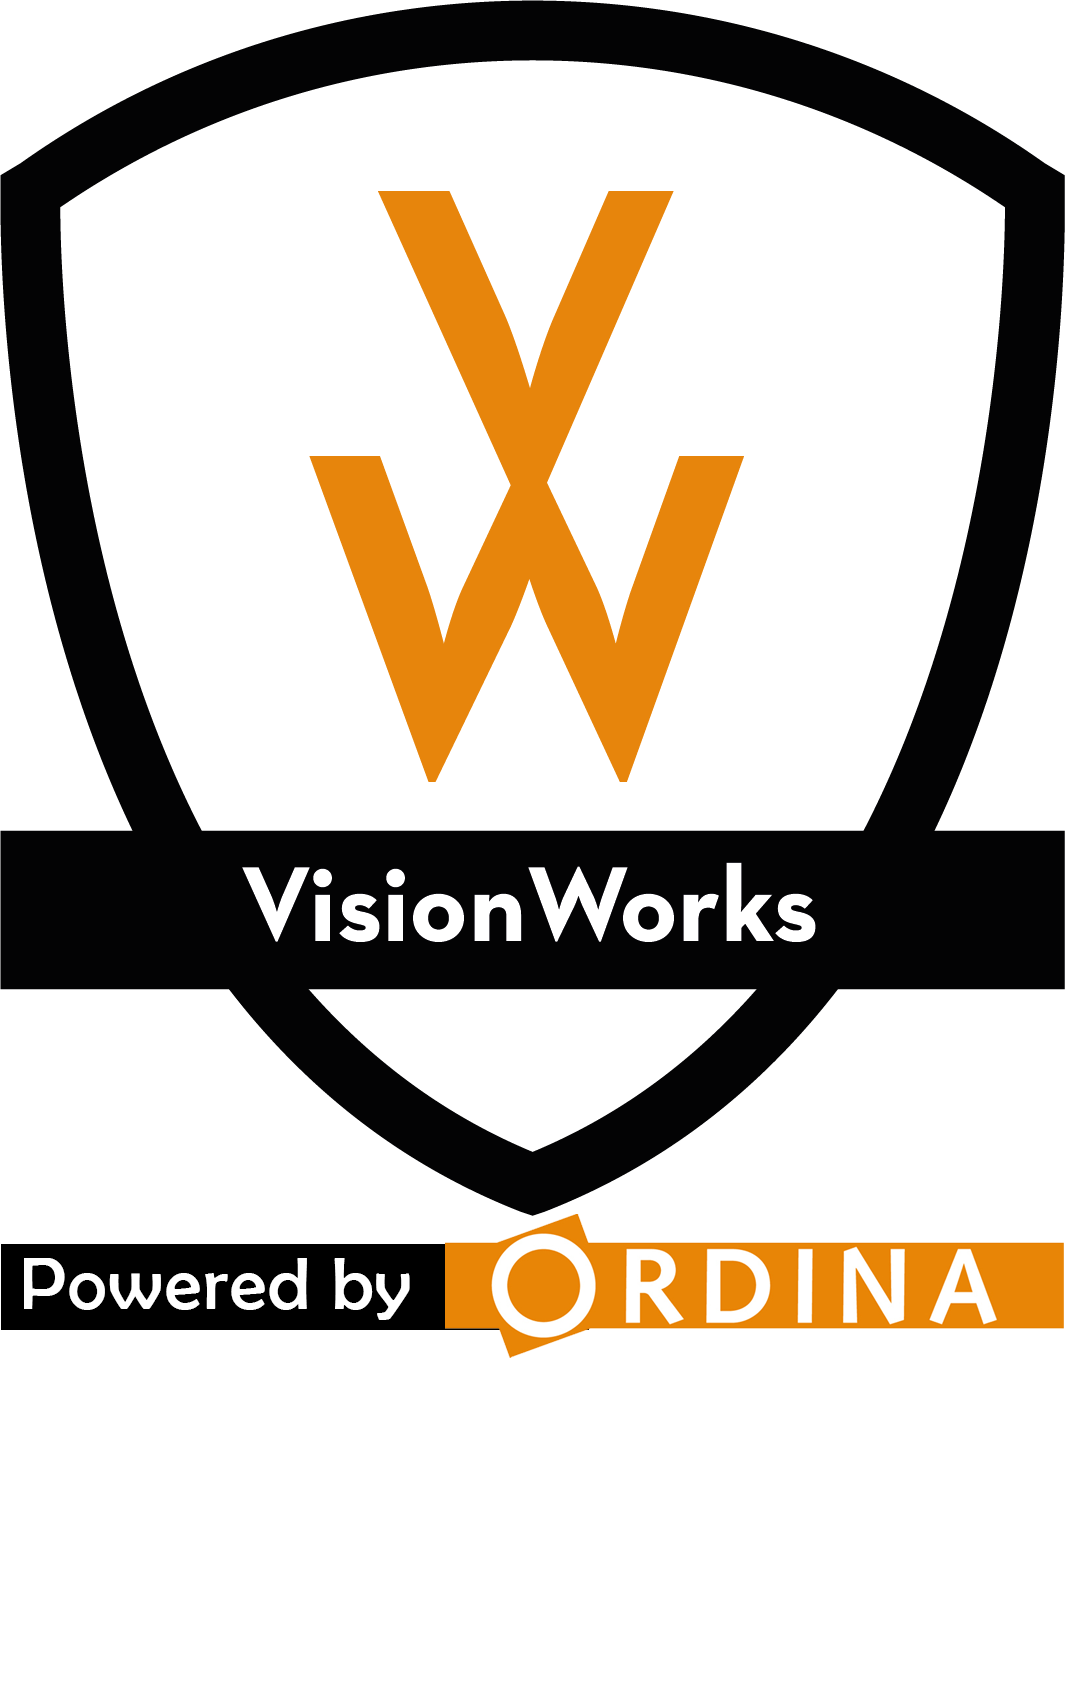 Visionworks Logo - VisionWorks - Our data experts